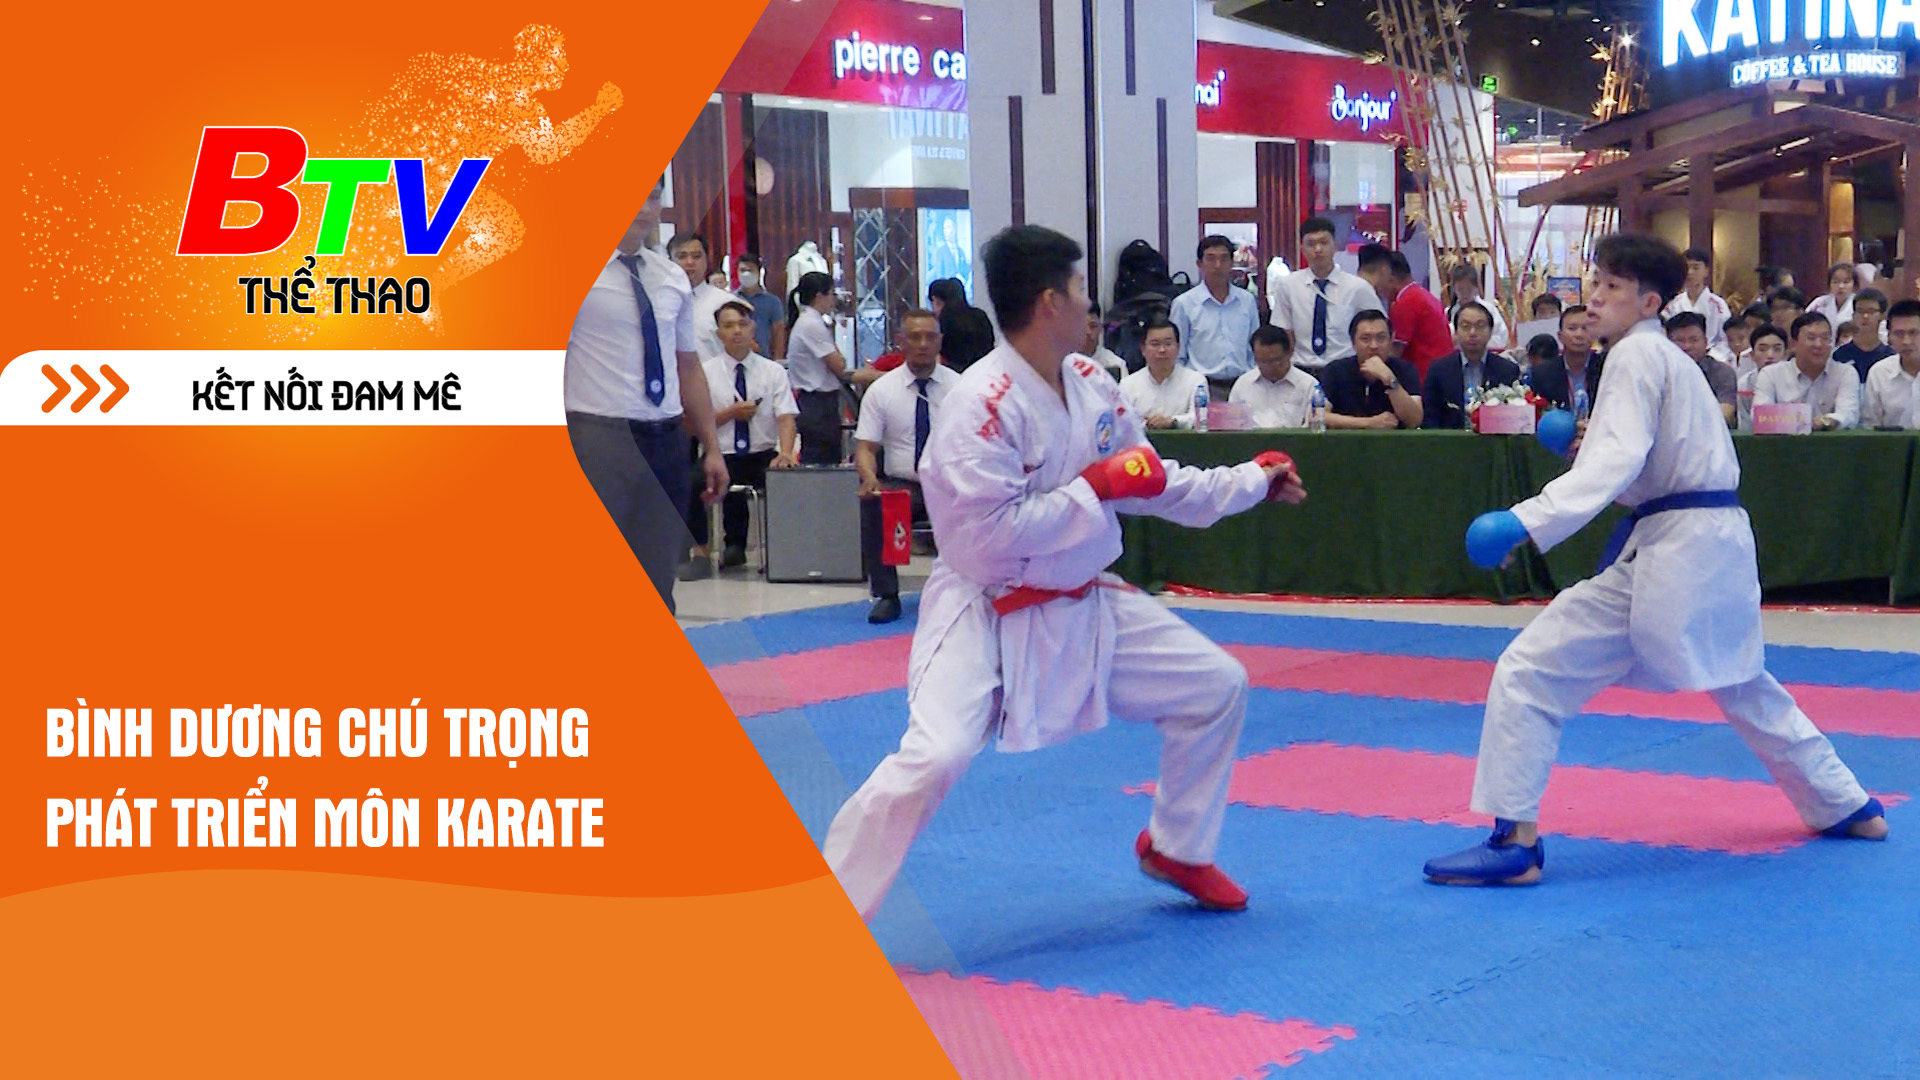 Bình Dương chú trọng phát triển môn Karate | Tin Thể thao 24h